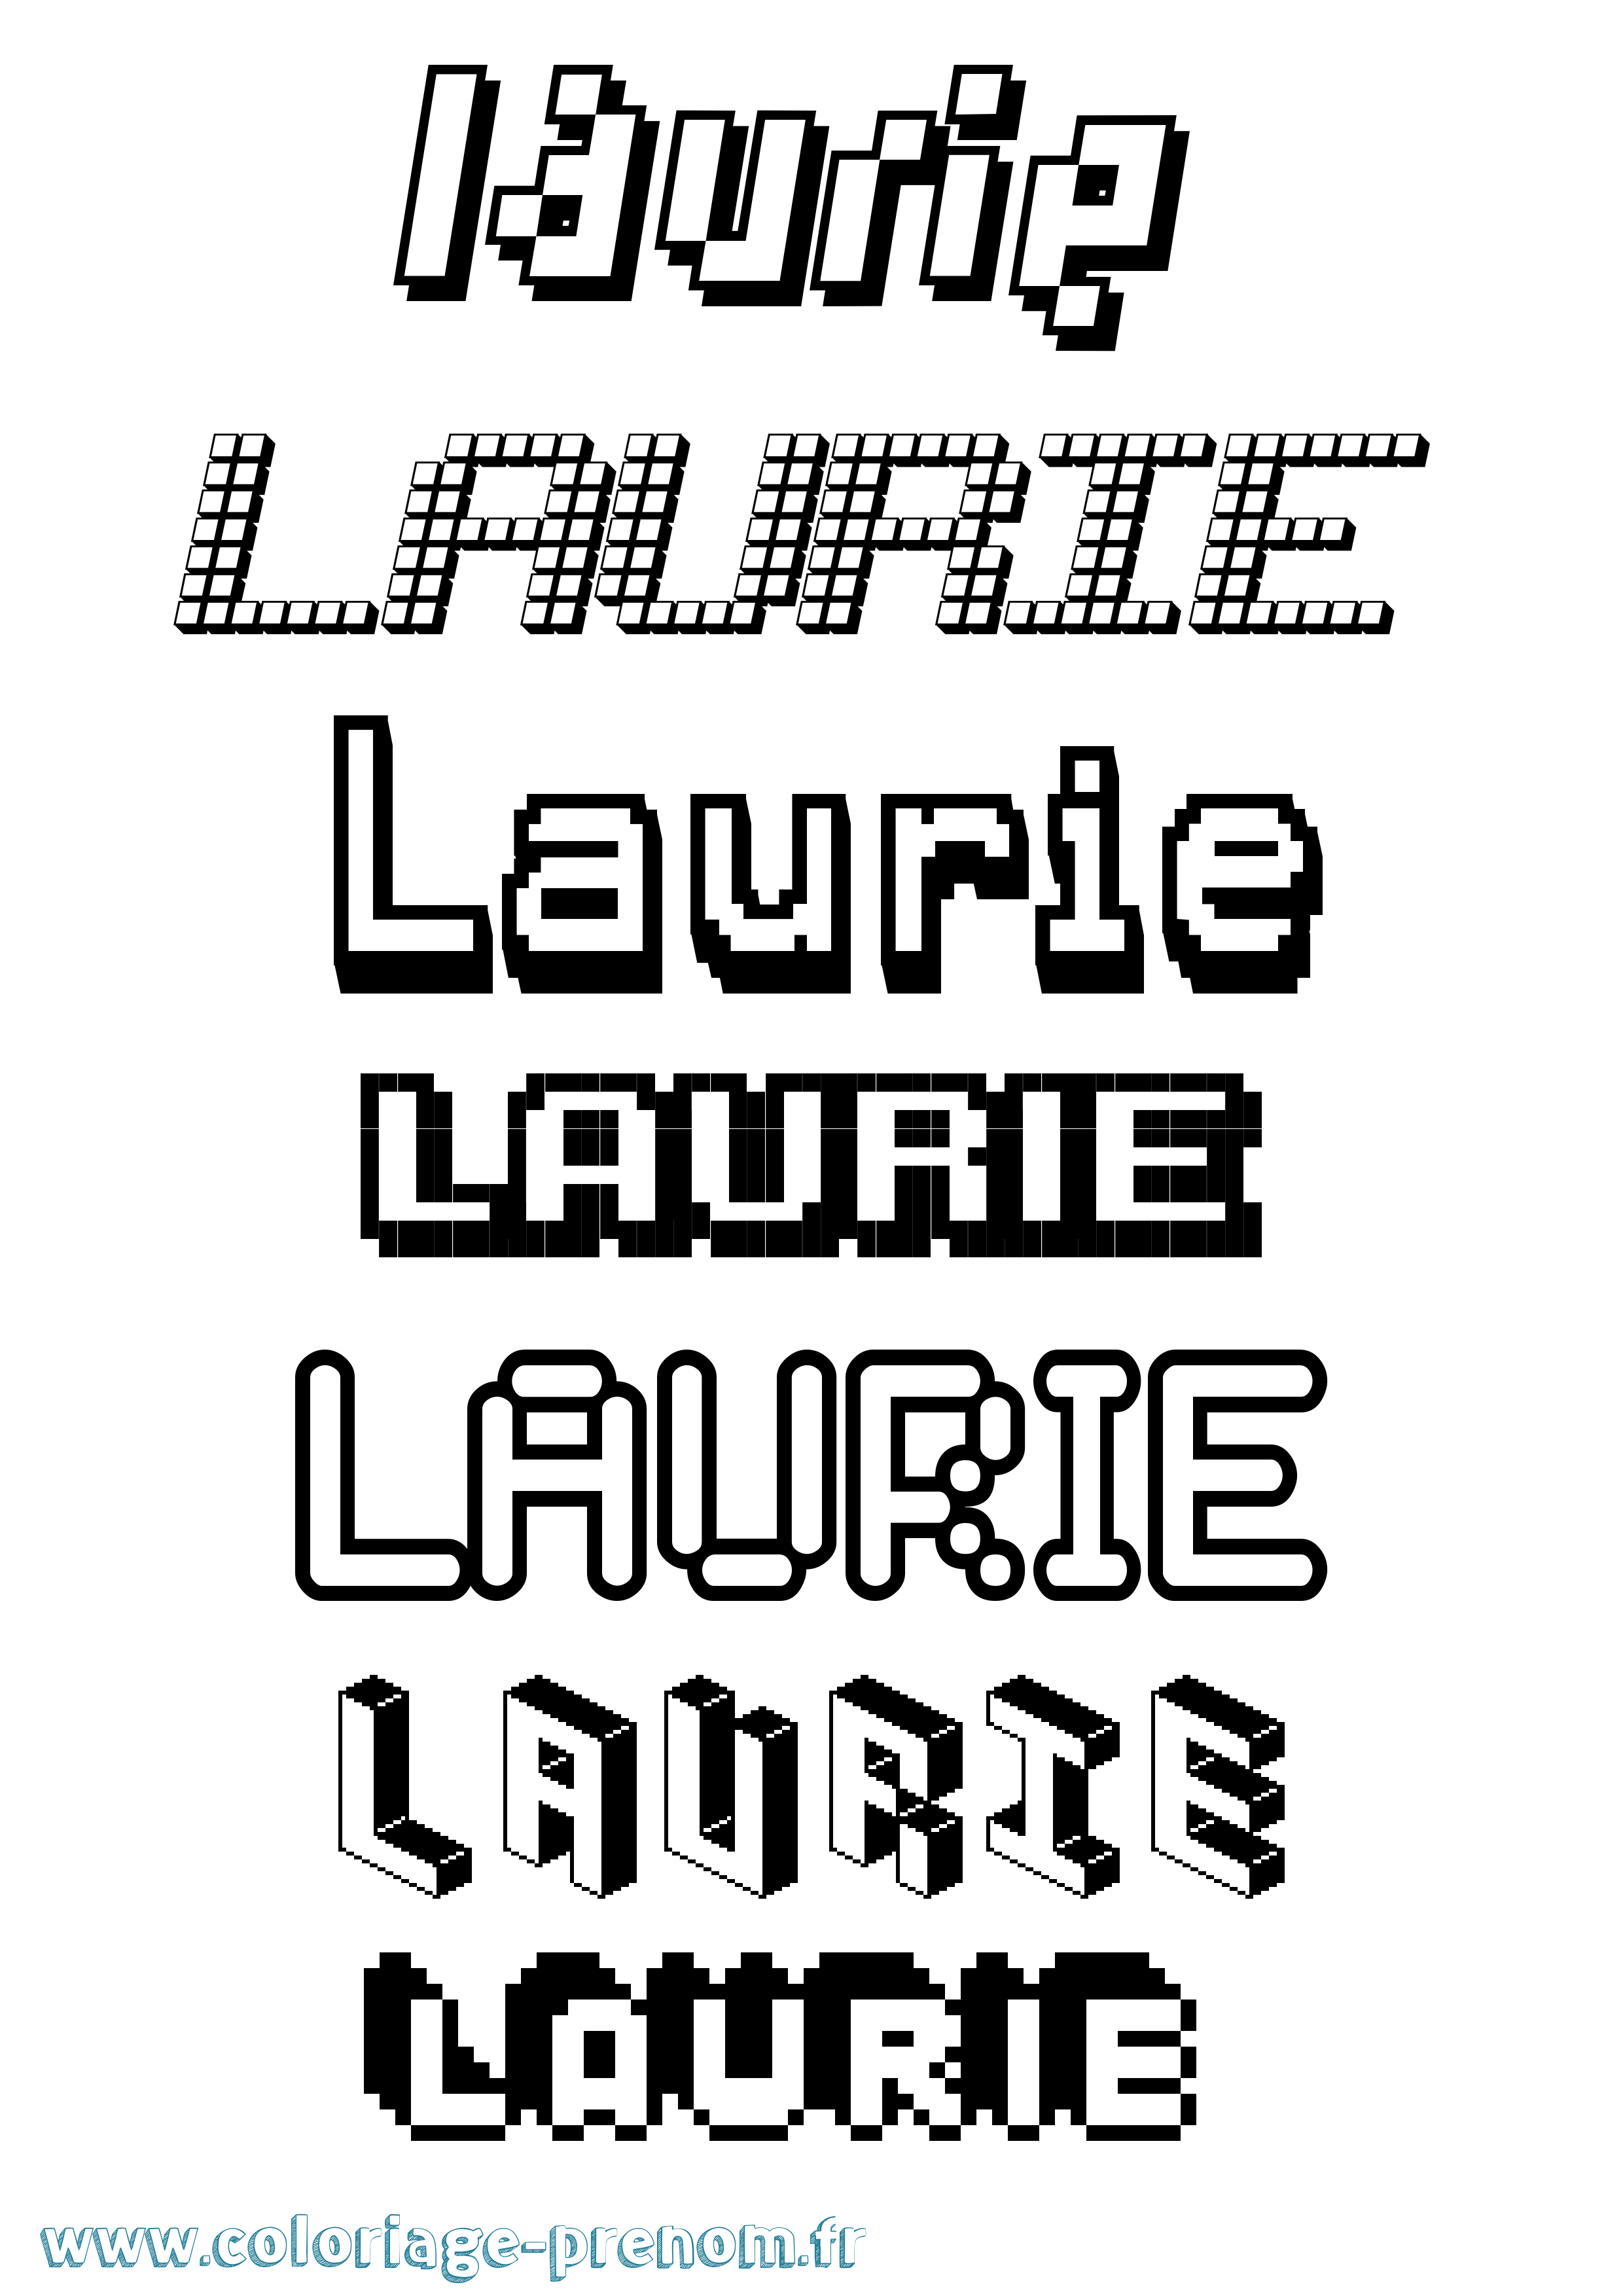 Coloriage prénom Laurie Pixel